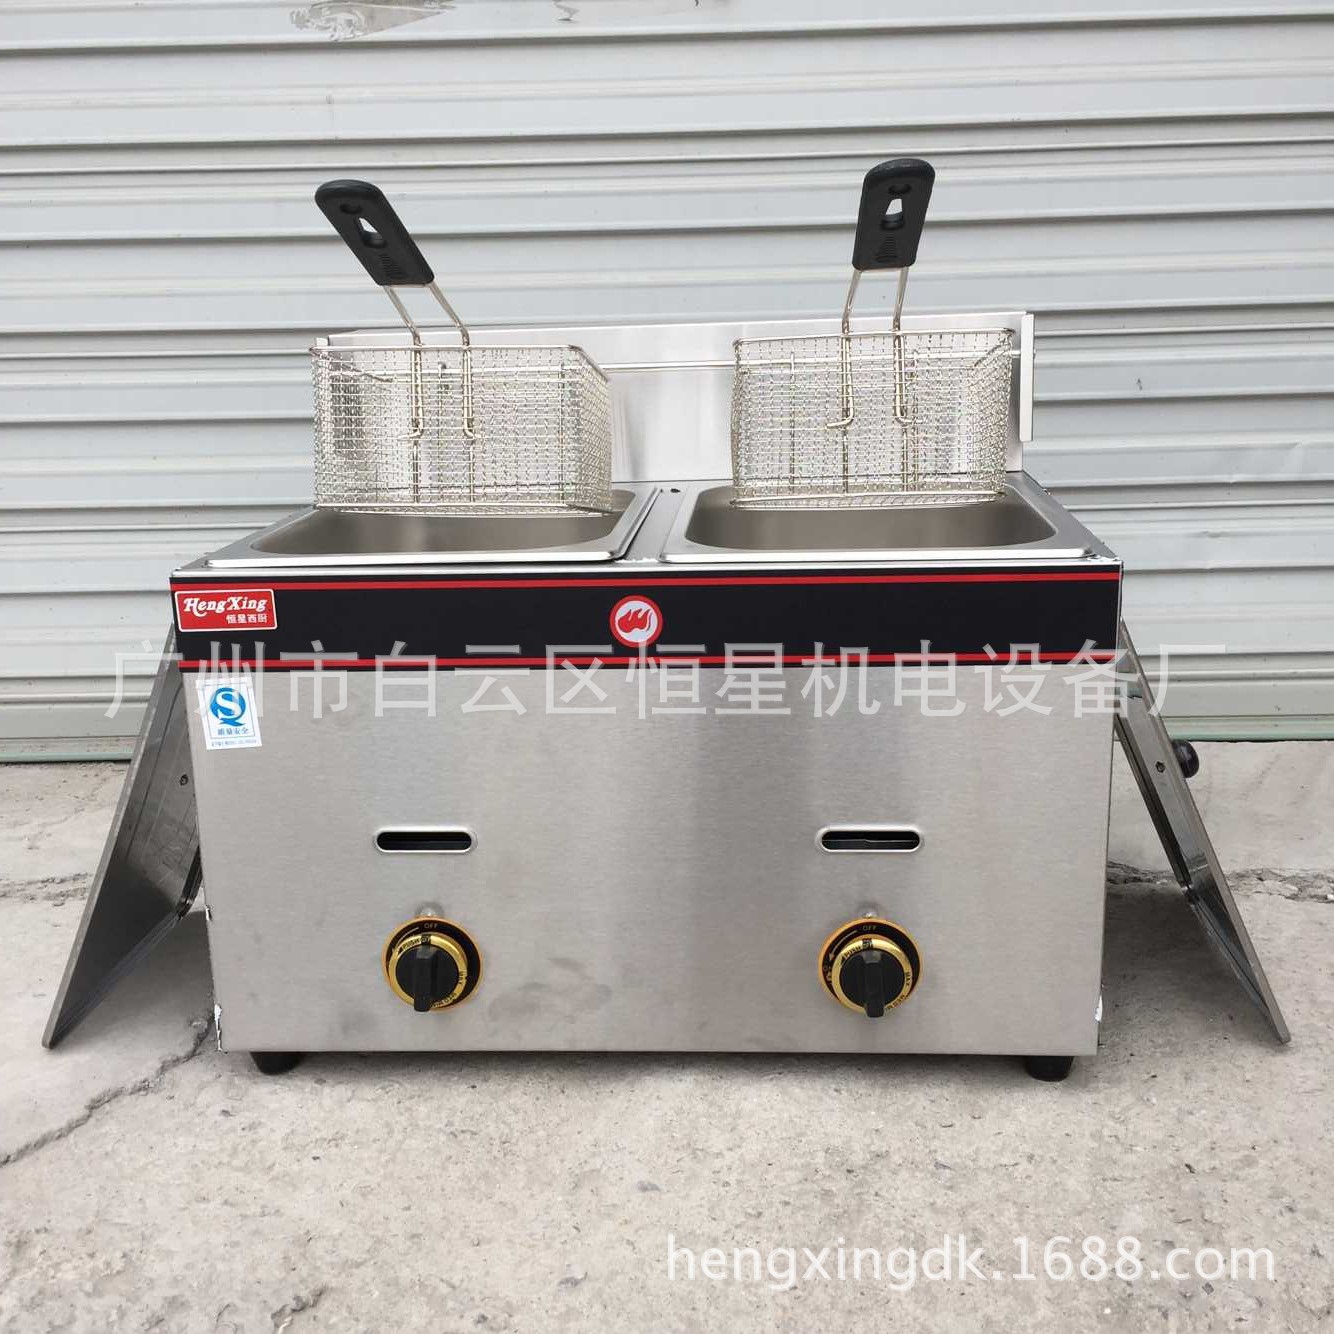 HX-72双缸气炸炉 商用炸锅 特价炸炉 炸鸡腿 薯条 臭豆腐厨具设备